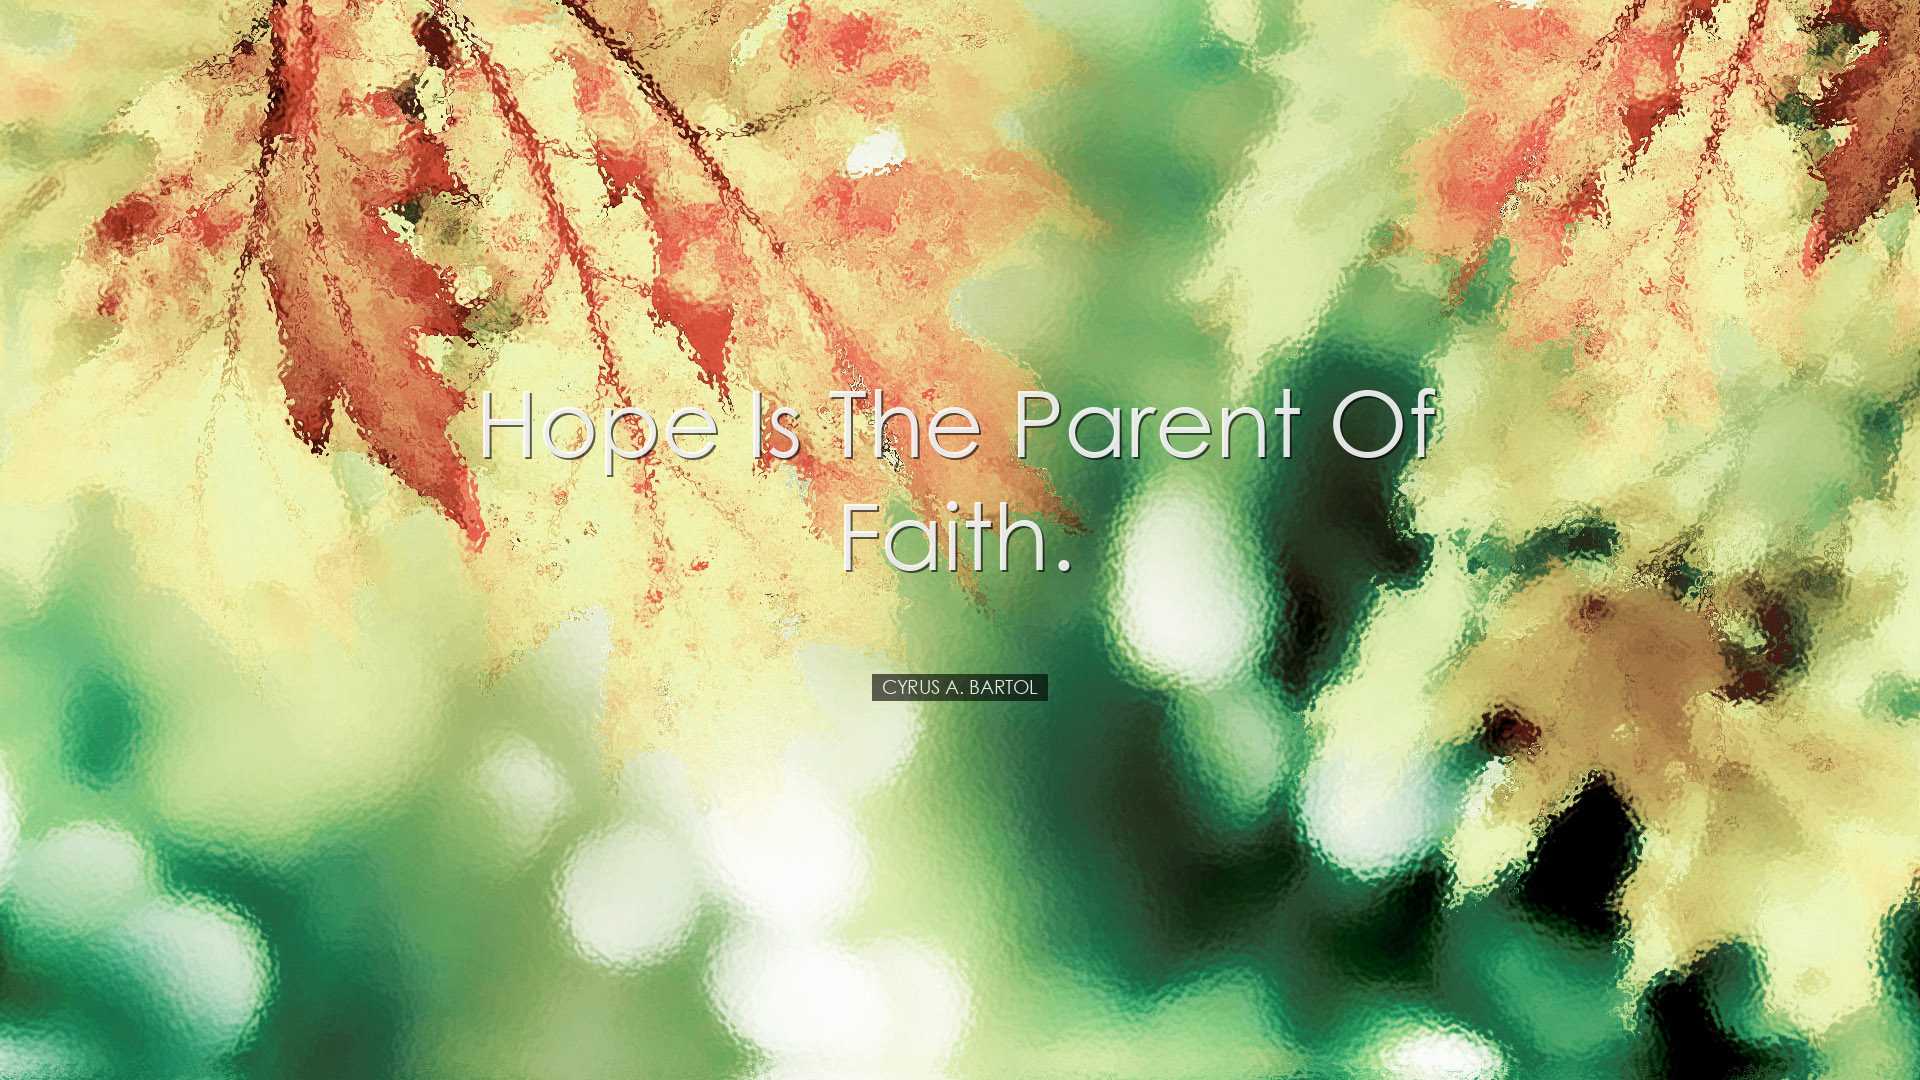 Hope is the parent of faith. - Cyrus A. Bartol